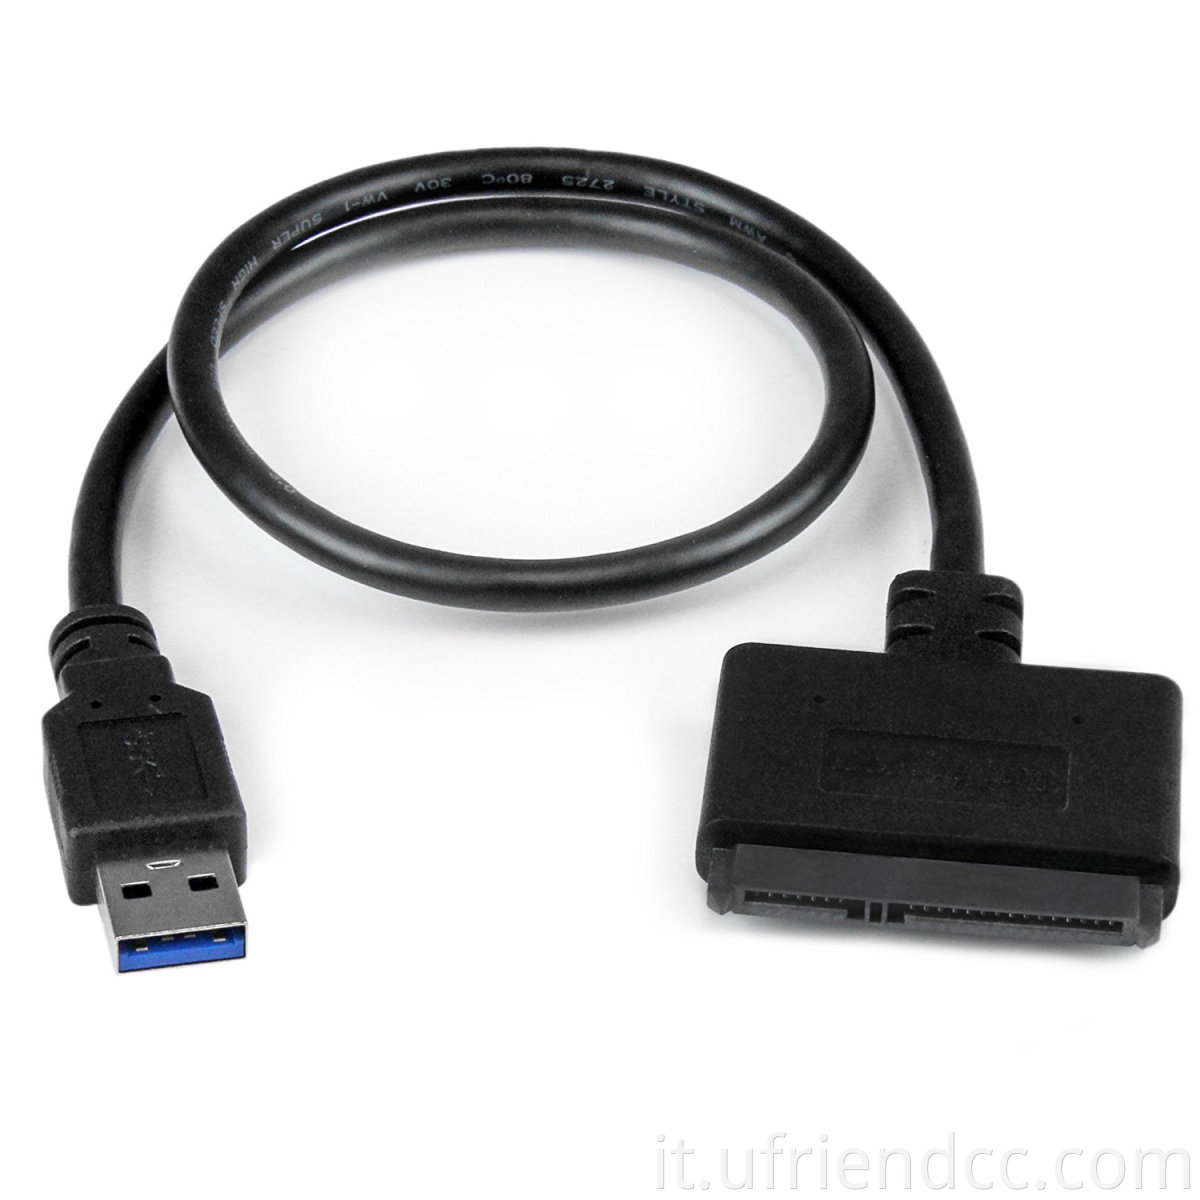 Cavo adattatore a disco rigido USB 3.0 SATA, cavo adattatore da SATA a USB per SSD e HDD da 2,5 pollici, supporto UASP, 9 pollici, nero